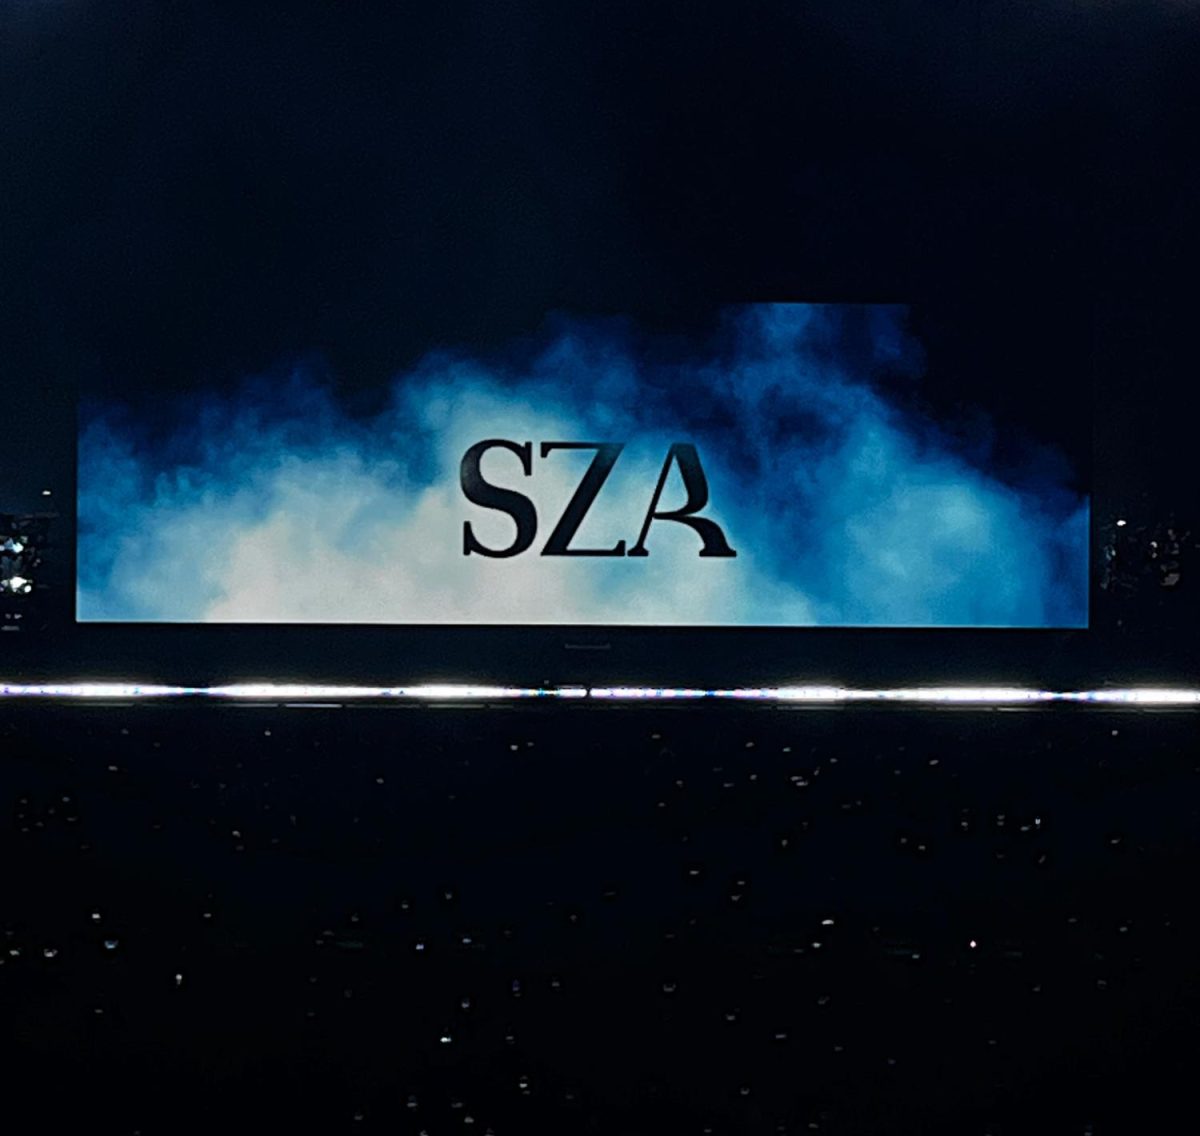 SZA voyages to San Antonio following her sophomore album, ‘SOS’